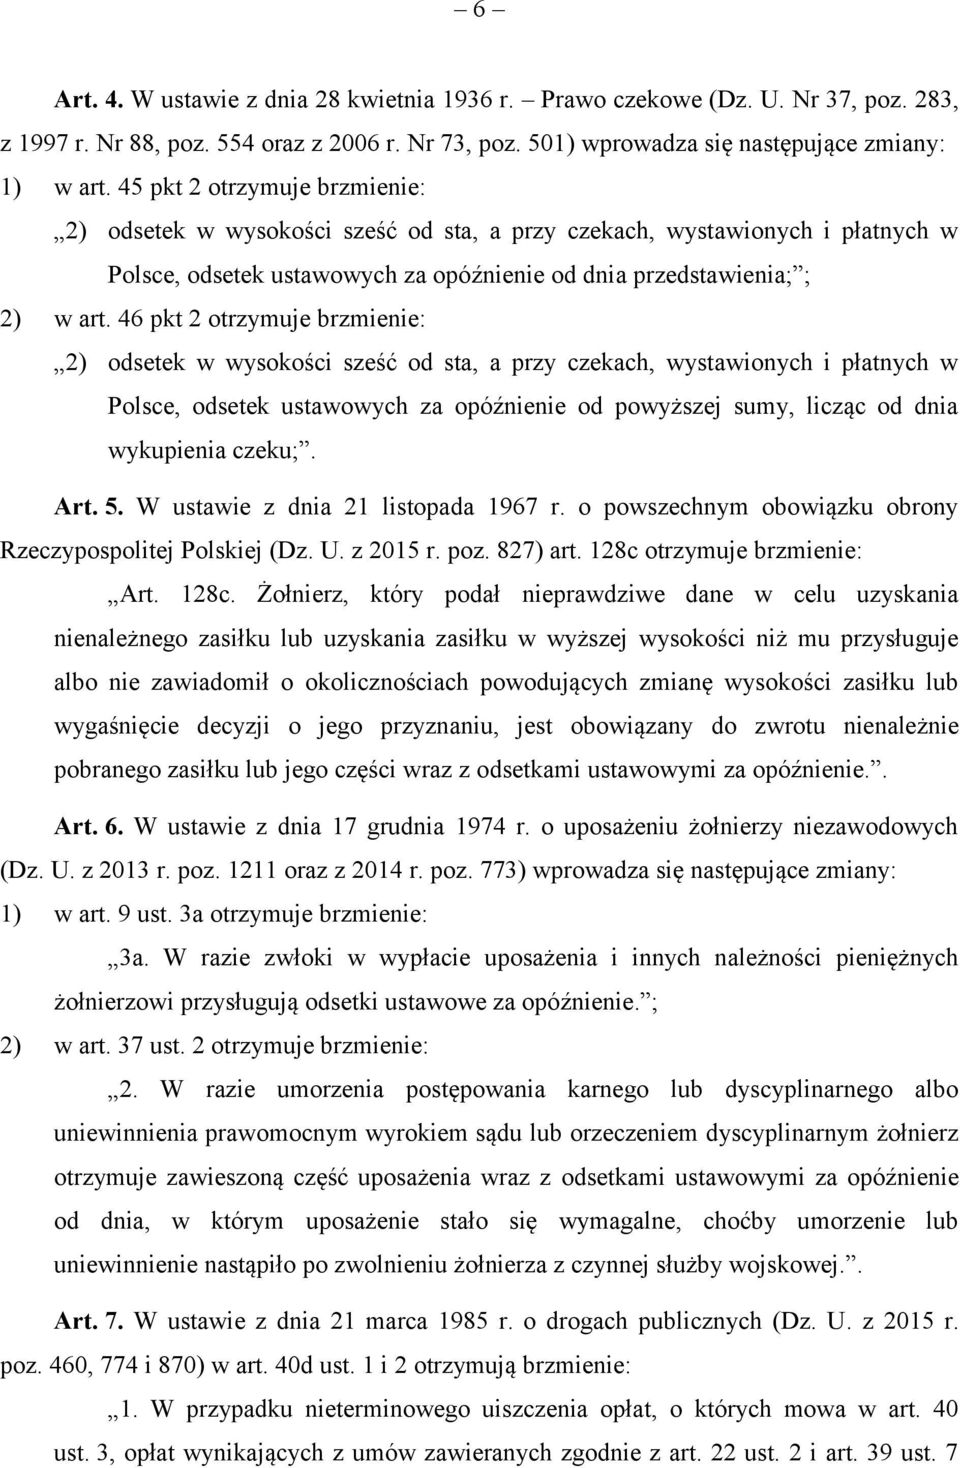 46 pkt 2 otrzymuje brzmienie: 2) odsetek w wysokości sześć od sta, a przy czekach, wystawionych i płatnych w Polsce, odsetek ustawowych za opóźnienie od powyższej sumy, licząc od dnia wykupienia